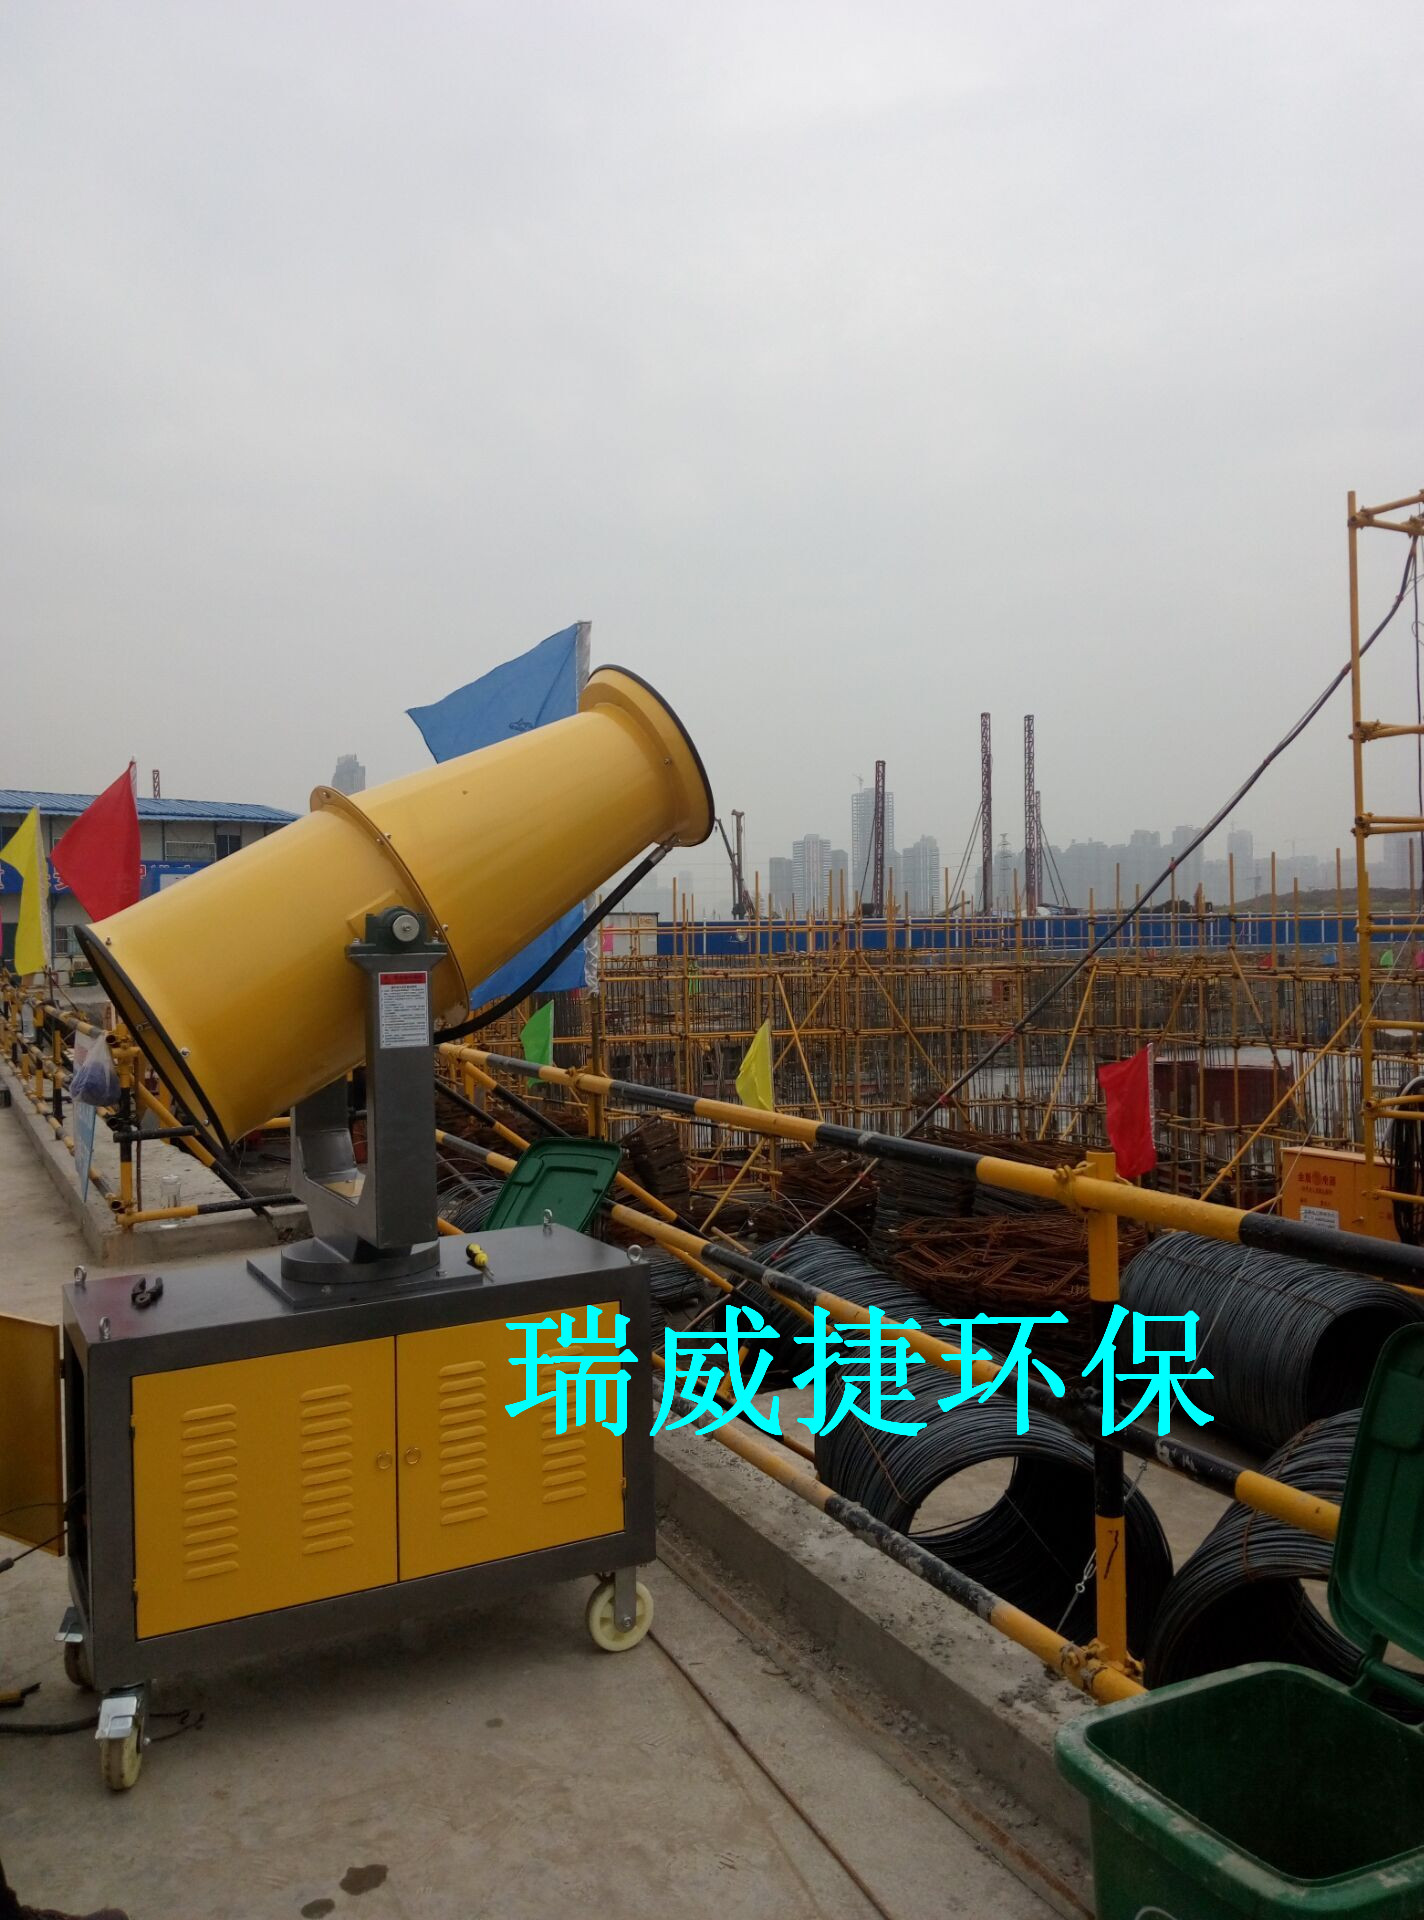 武汉环保设备厂家瑞威捷降尘喷雾机正在热销